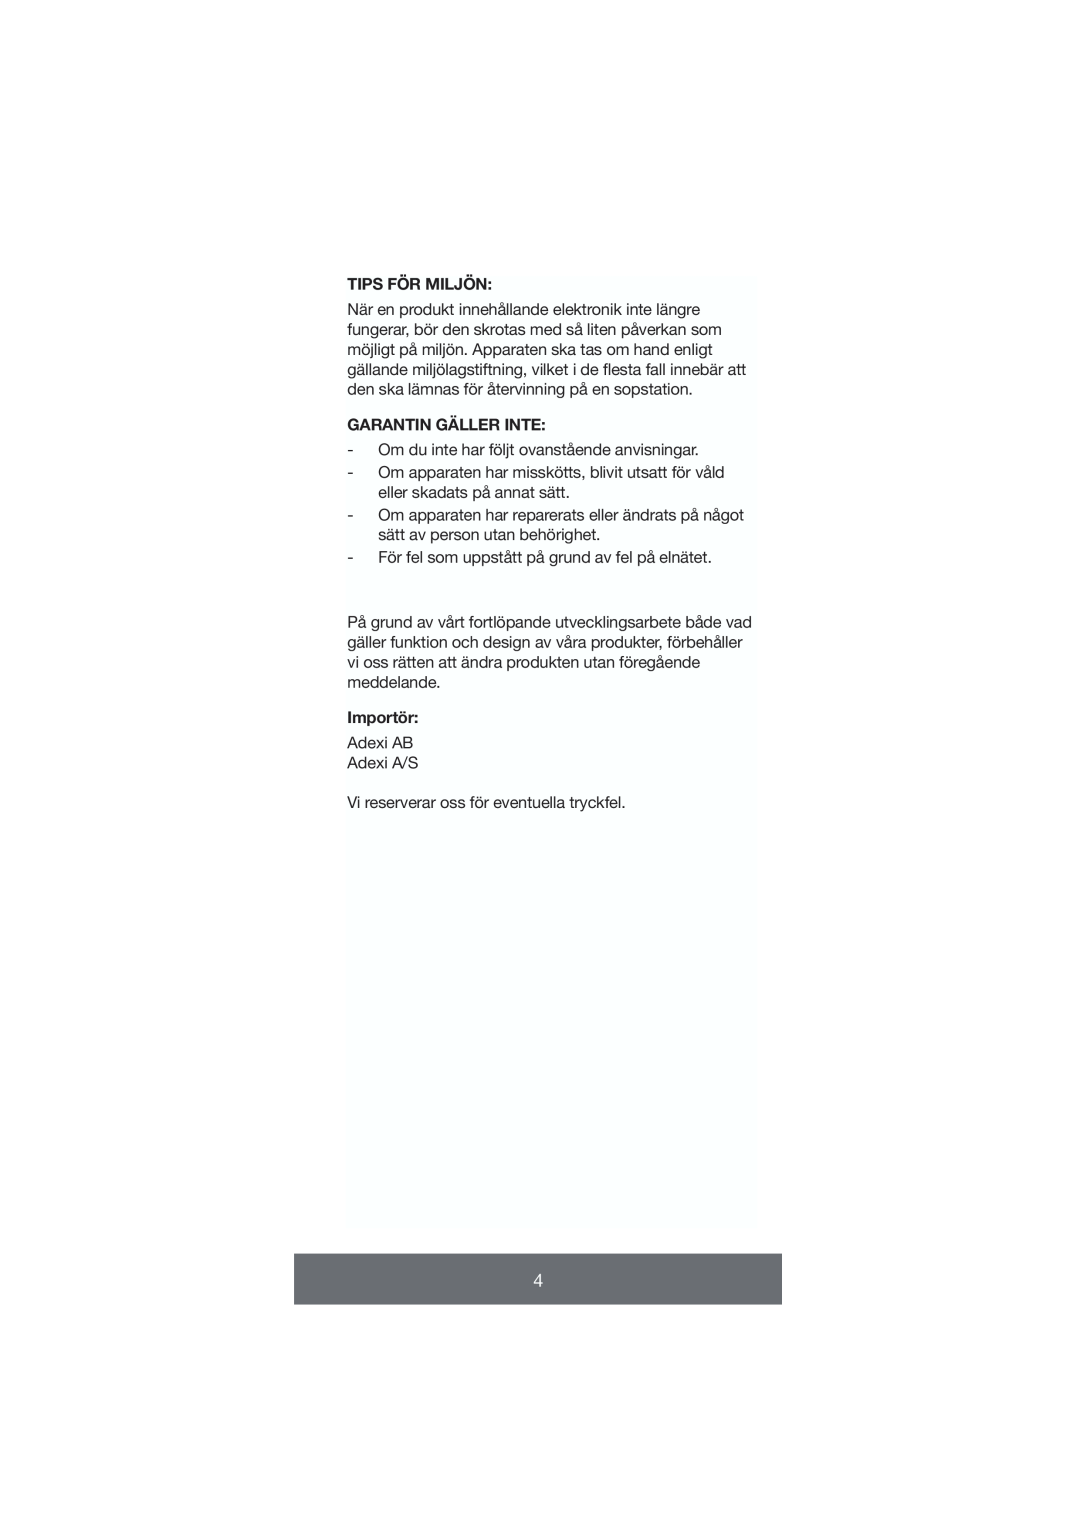 Melissa 646-035 manual Tips För Miljön, Garantin Gäller Inte, Importör 